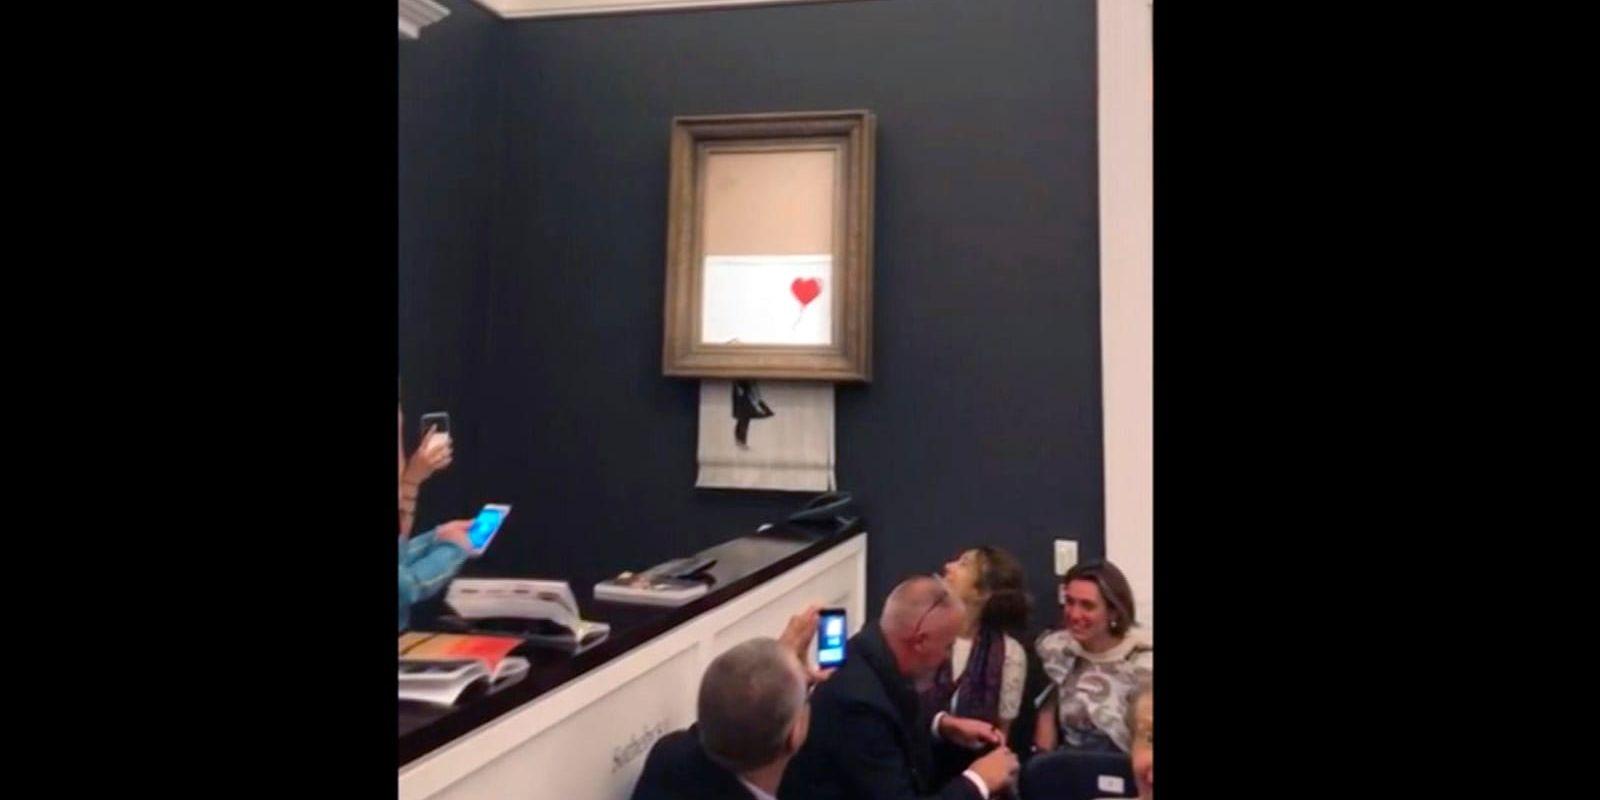 Mitt under budgivningen på auktionsfirman Sotheby's i London strimlades Banksys verk "Girl with balloon" sönder. Arkivbild.